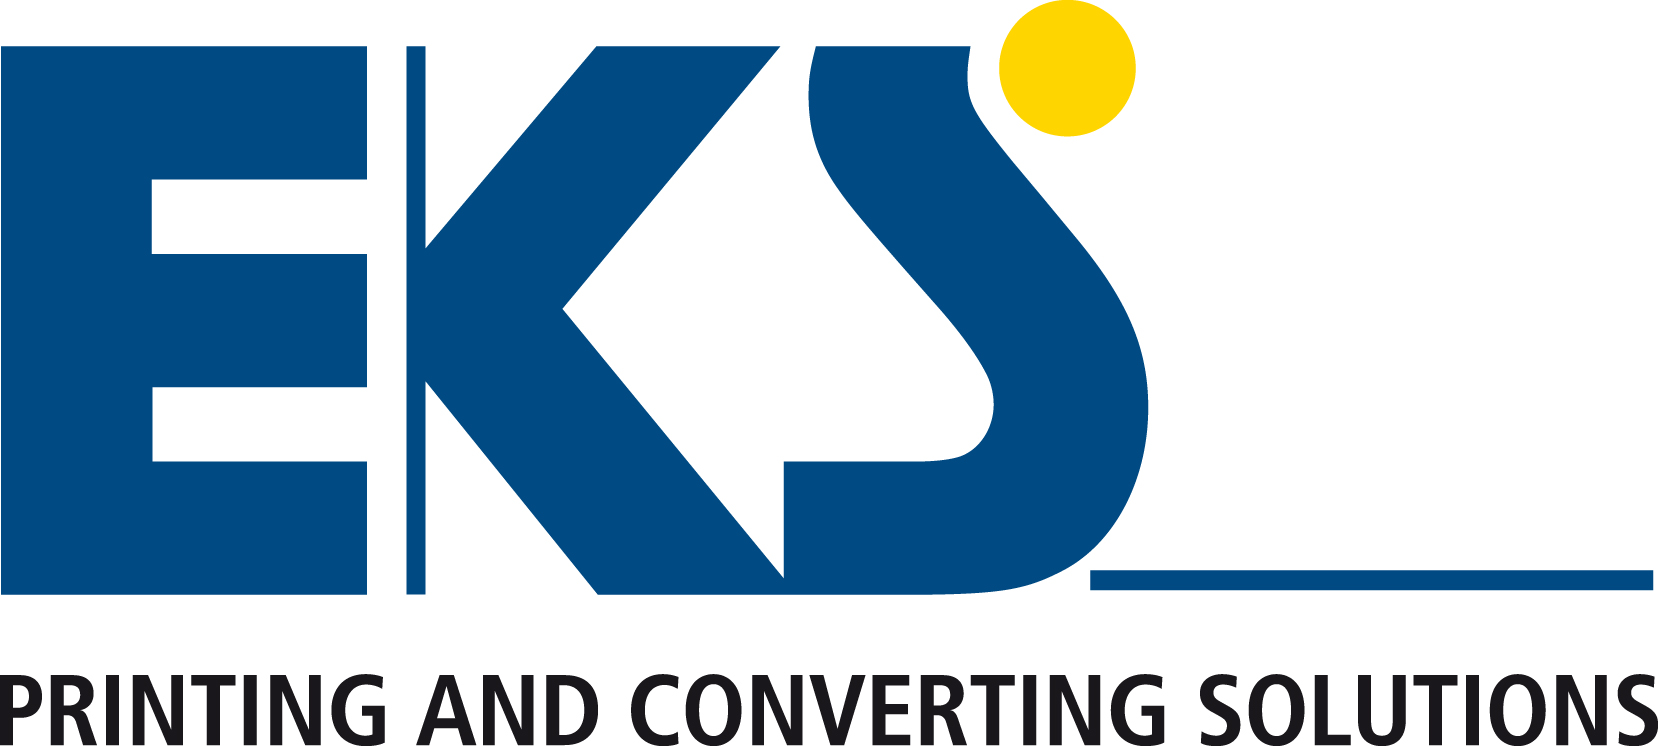 EKS_Logo_RGB.jpg